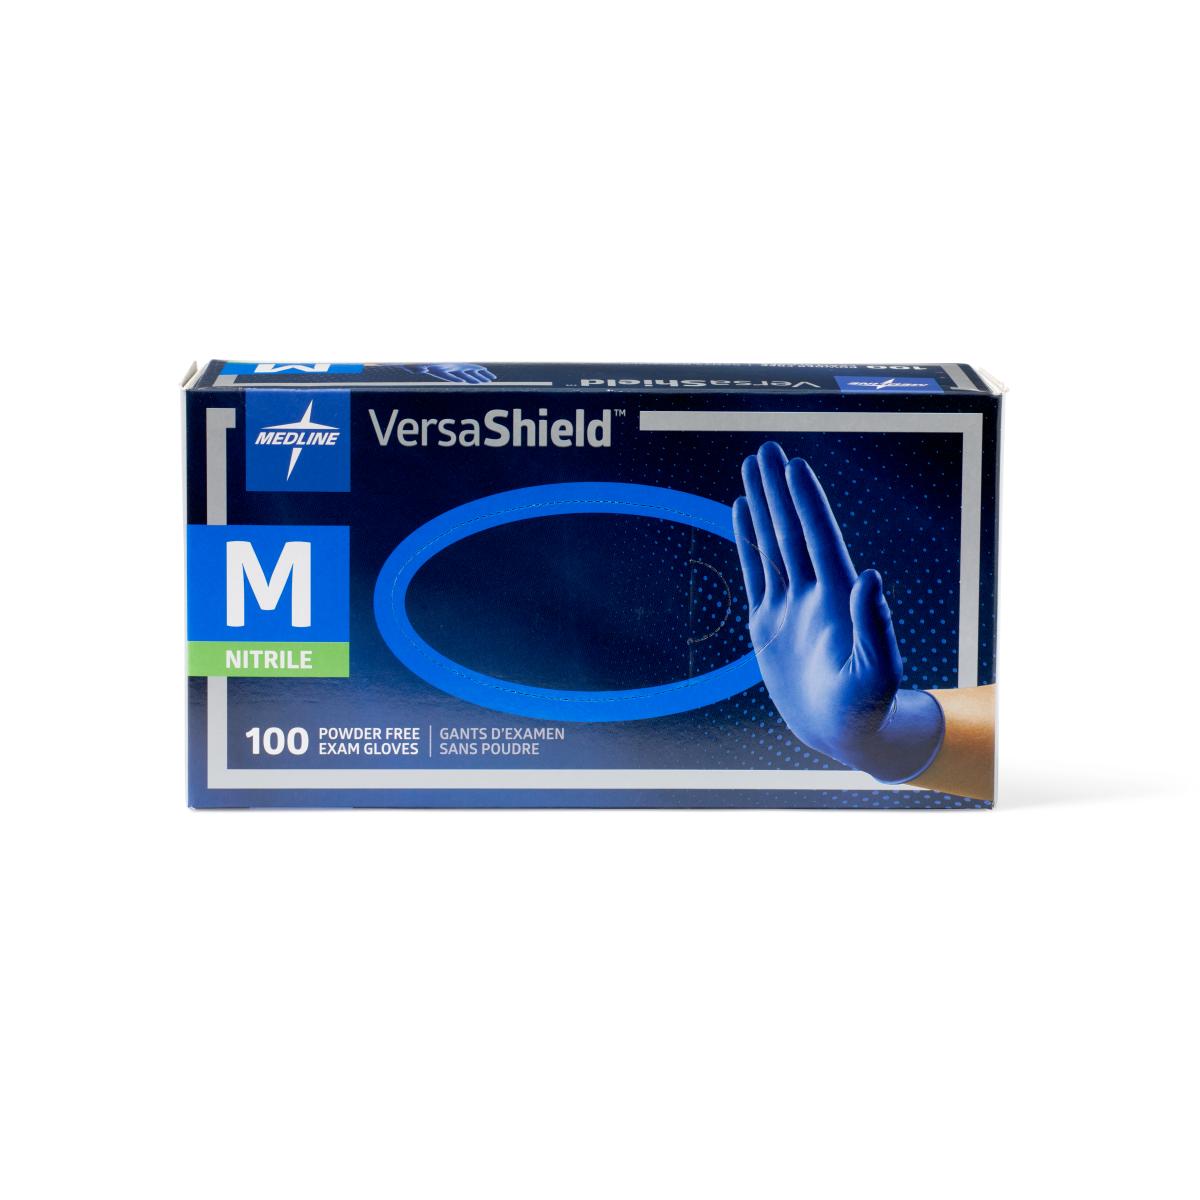 Versashield brand blue gloves in blue box - medium size